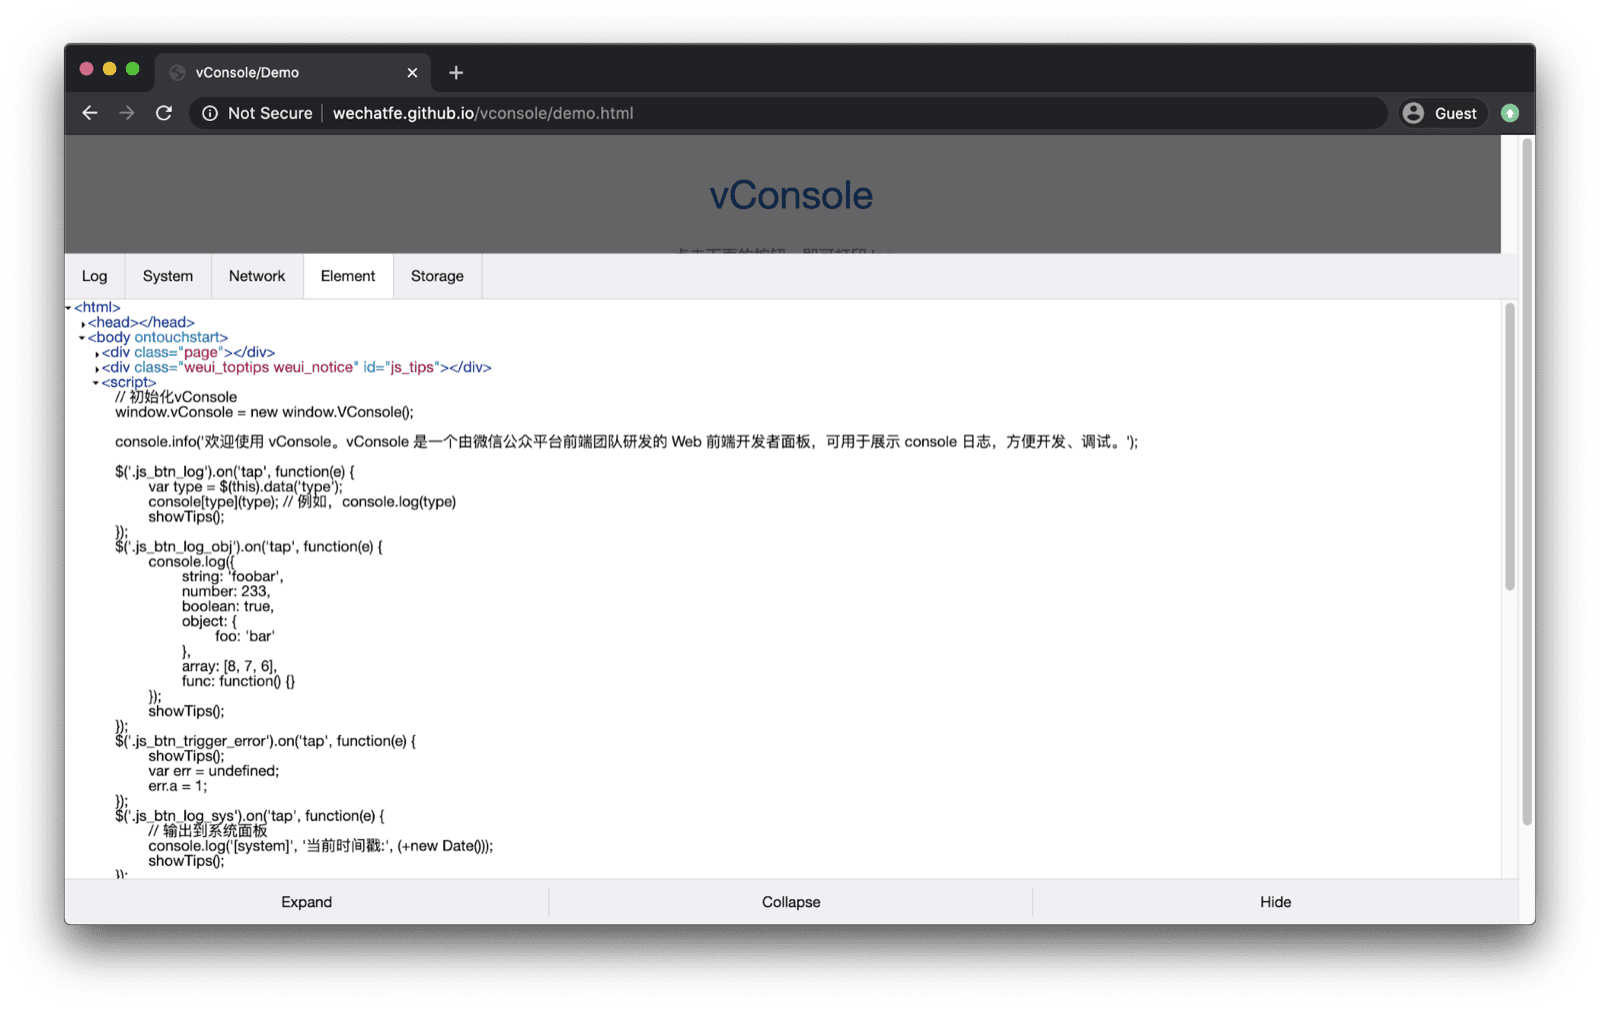 אפליקציית הדגמה של vConsole. ה-vConsole נפתח בחלק התחתון ומכיל כרטיסיות ליומנים, למערכת, לרשת, לרכיבים ולאחסון.